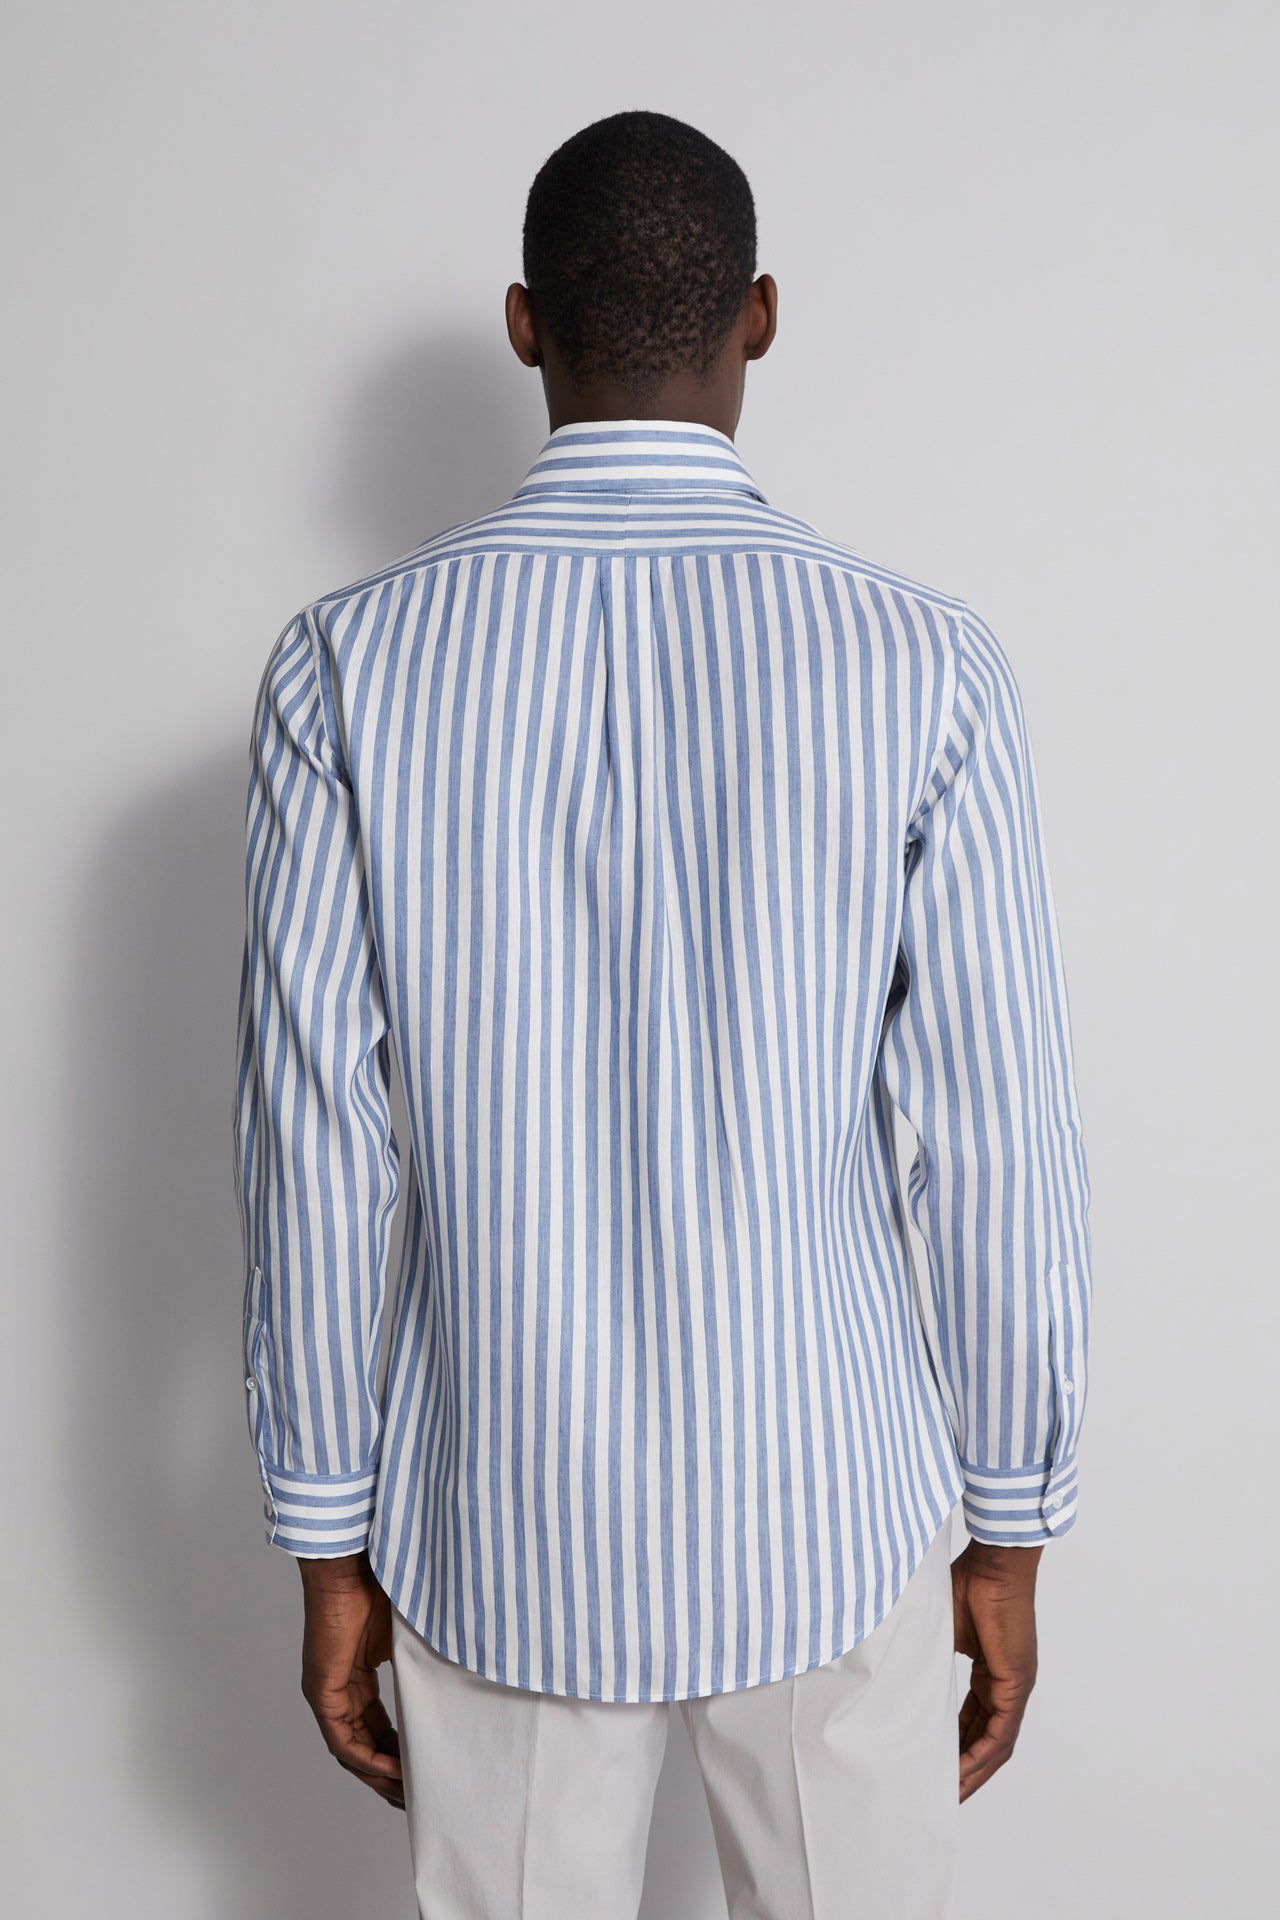 Designer Men's Striped Linen Shirt - White & Blue - Back View 